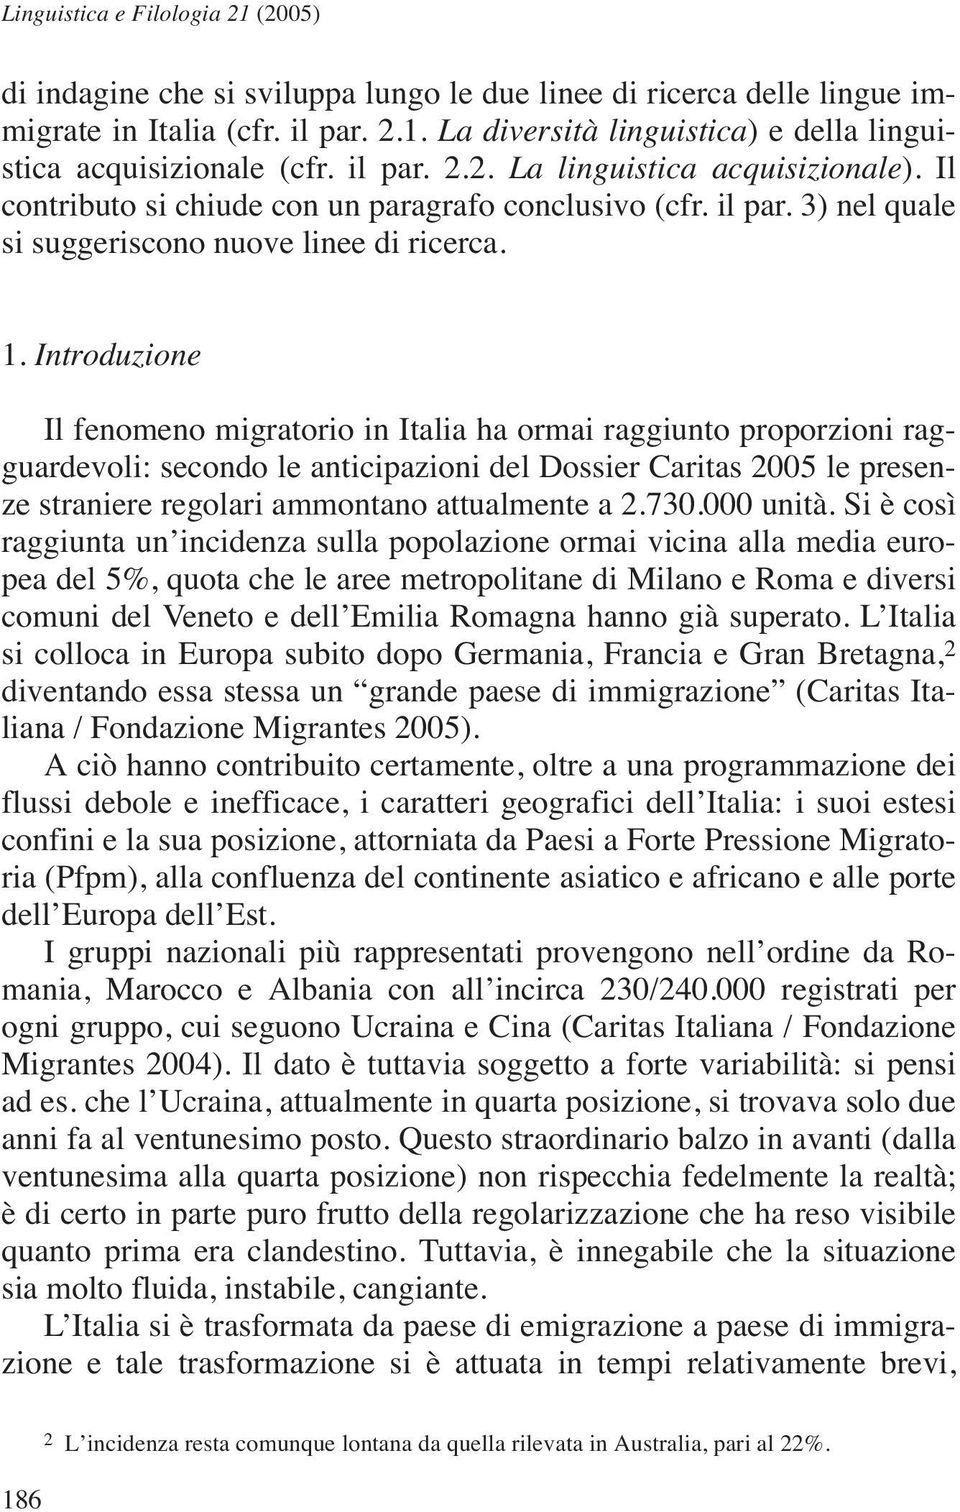 Introduzione Il fenomeno migratorio in Italia ha ormai raggiunto proporzioni ragguardevoli: secondo le anticipazioni del Dossier Caritas 2005 le presenze straniere regolari ammontano attualmente a 2.